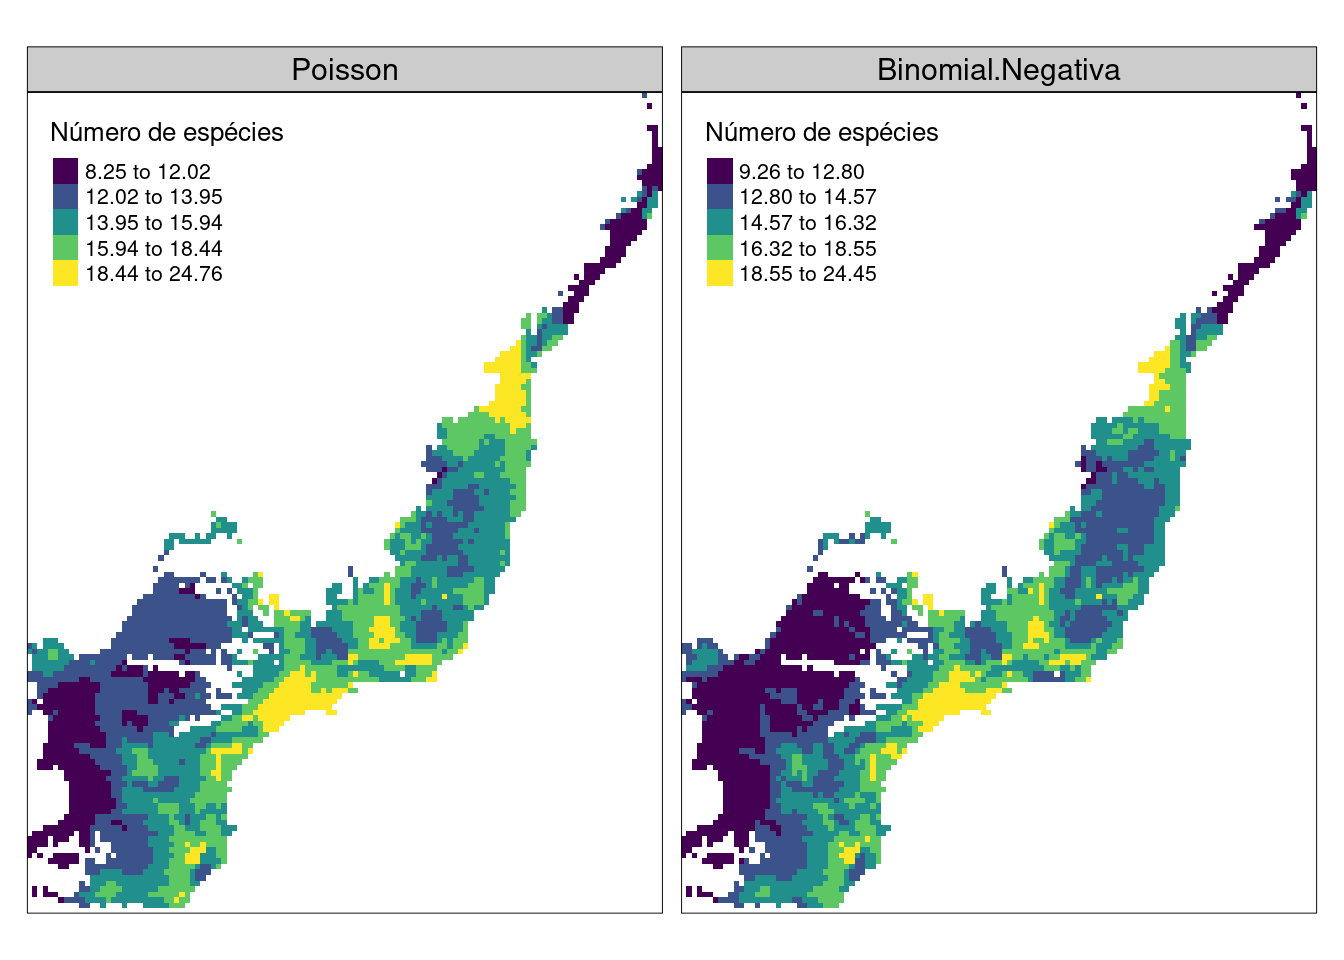 Mapa da predição de riqueza utilizando o modelo Poisson e Binomial Negativa para a Mata Atlântica.